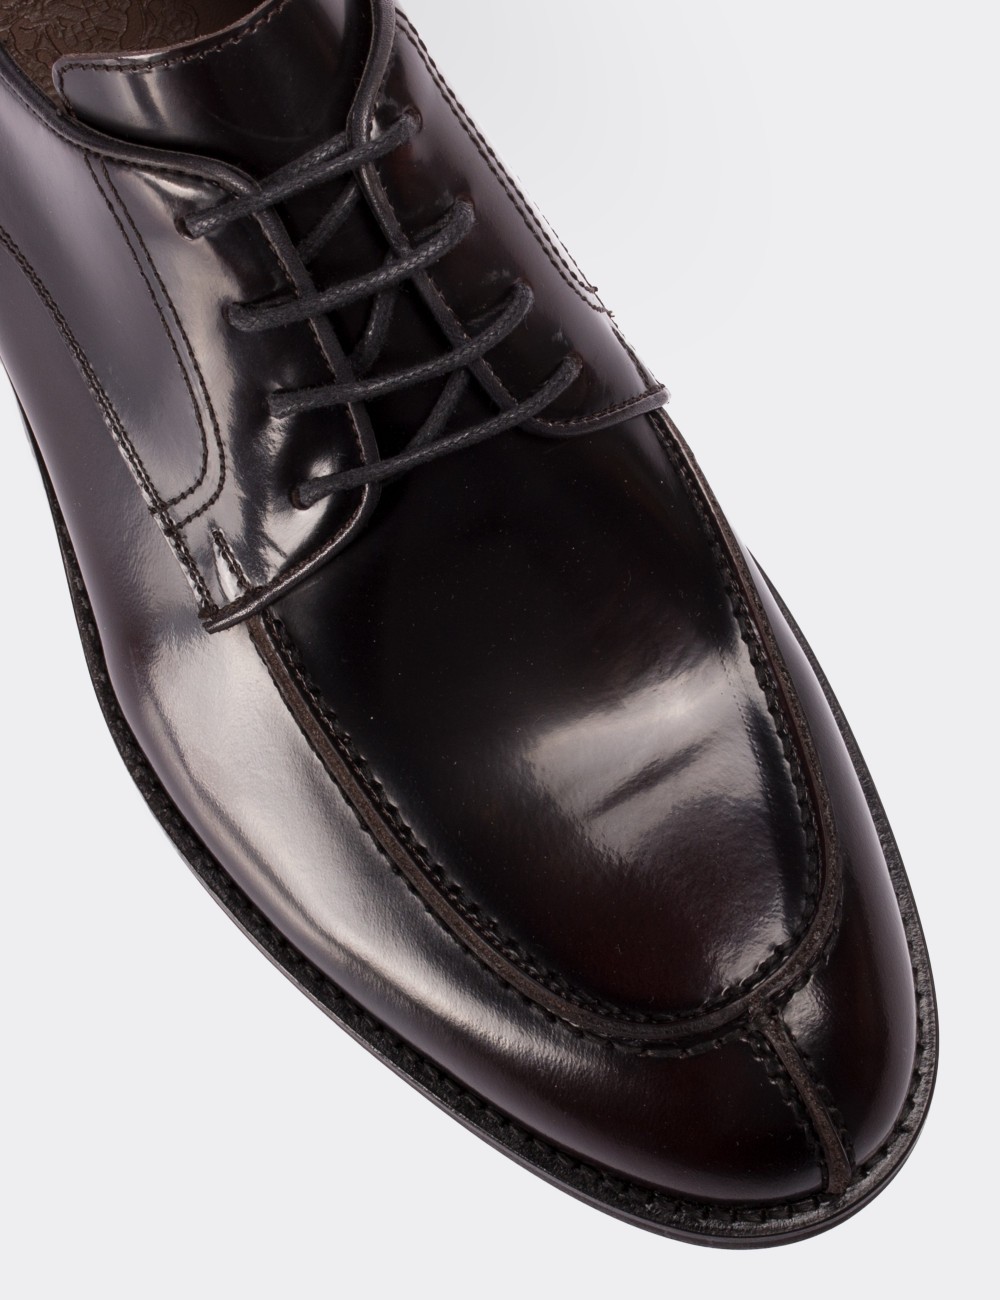 Hakiki Deri Bordo Klasik Erkek Ayakkabı - 01695MBRDM01